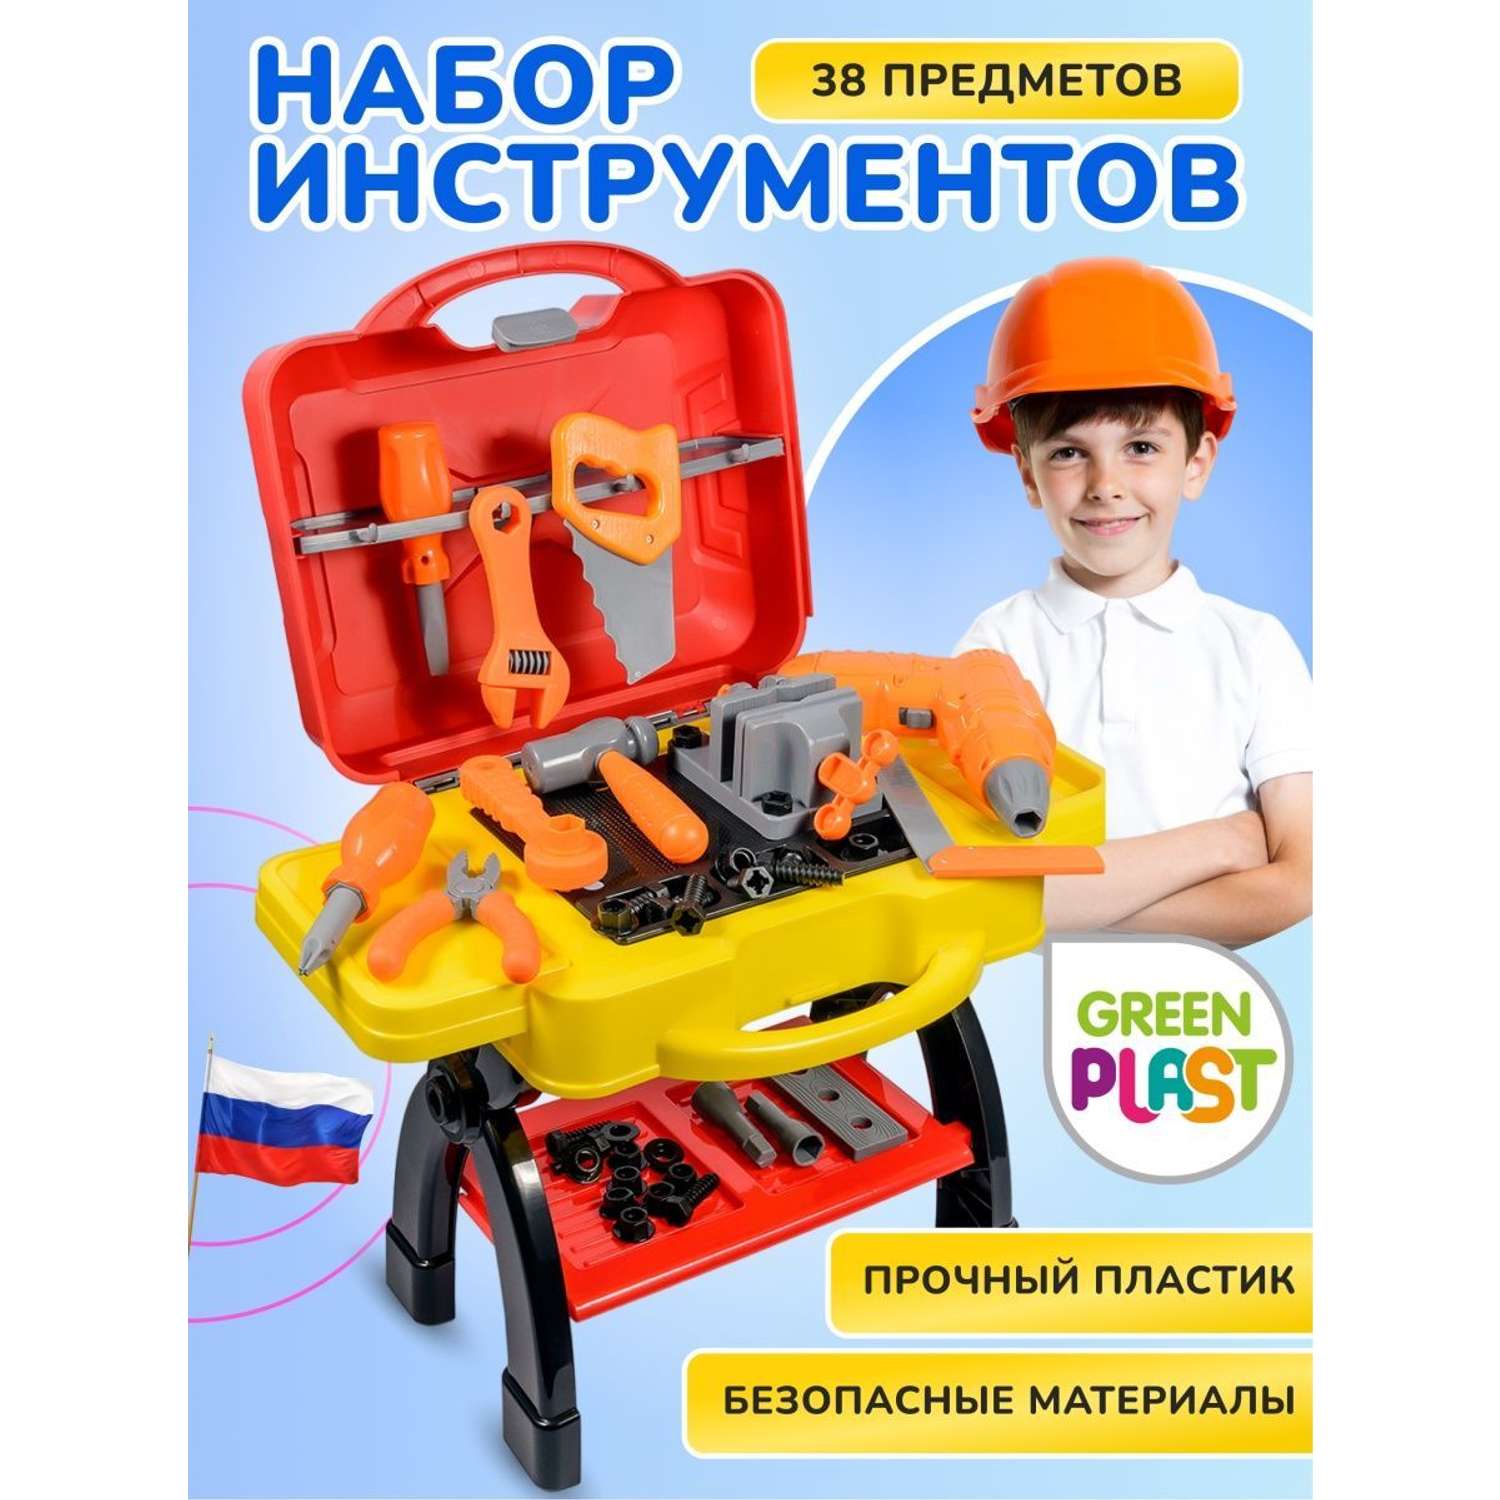 Игровой набор детский Green Plast игрушечные инструменты Мобильная мастерская для мальчика - фото 1